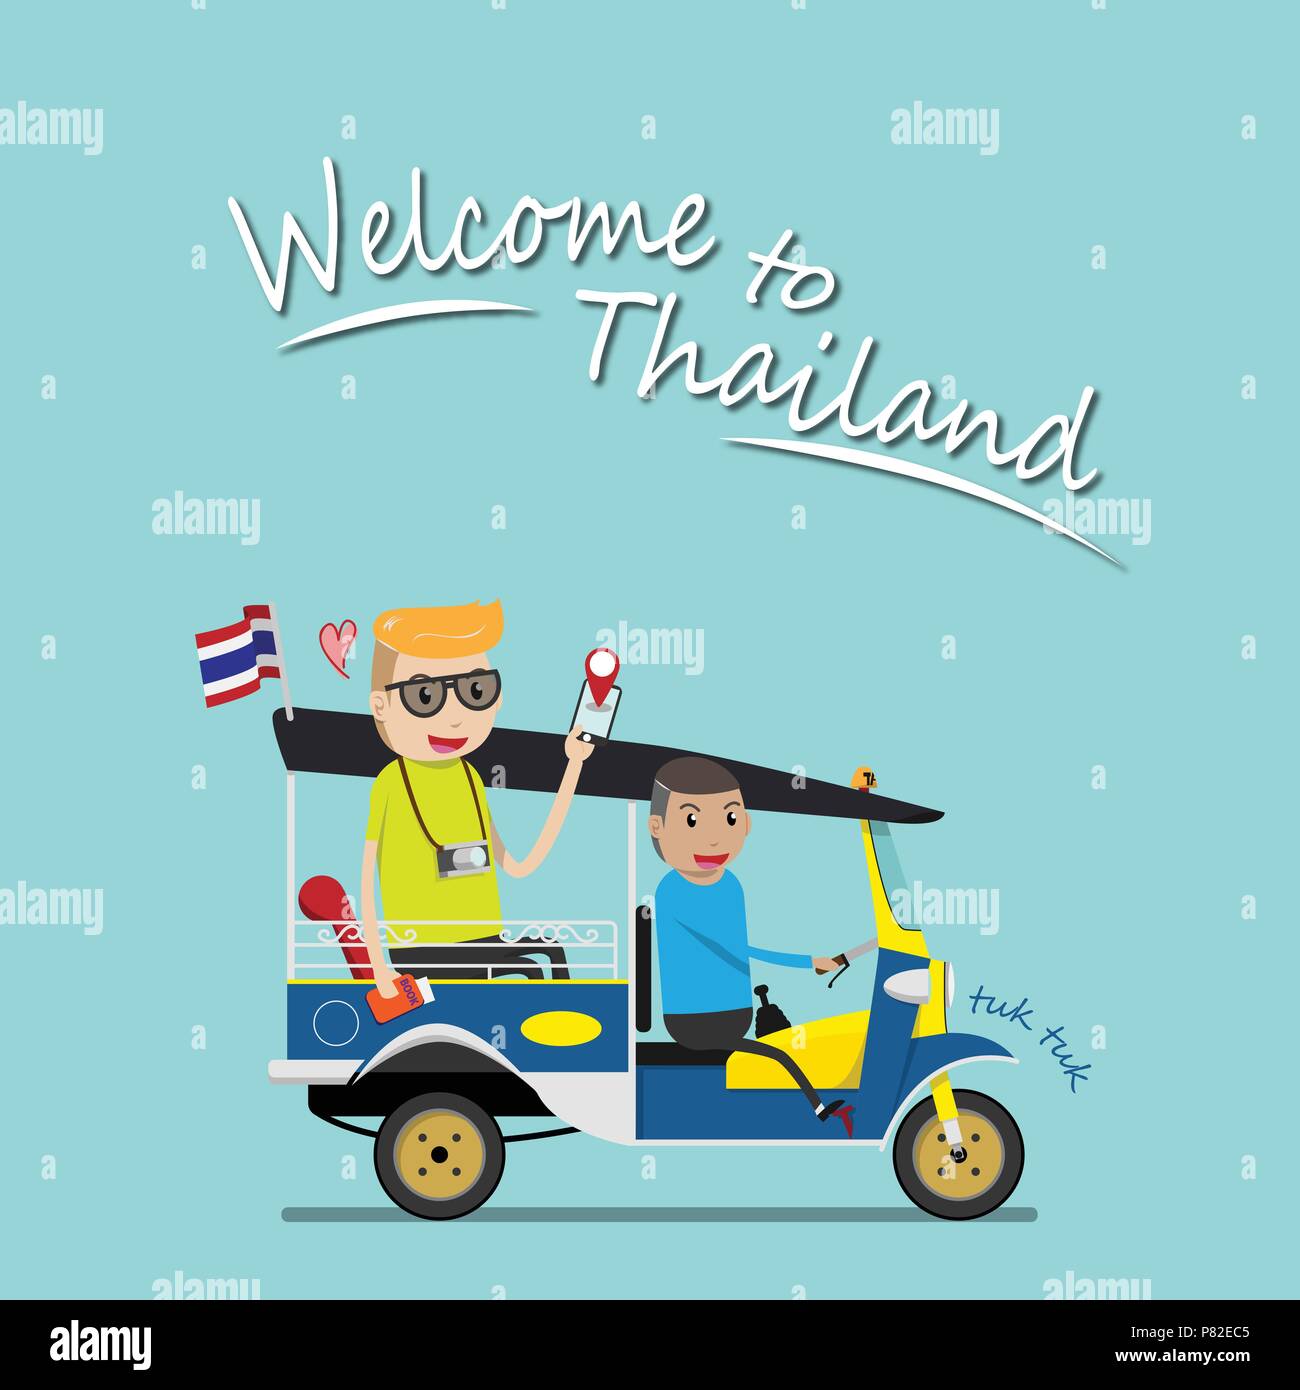 Touriste étranger prendre en tuk tuk pour visiter l'attraction autour de Bangkok, Thaïlande. tuk tuk est un véhicule taxi local avec trois roues. ride tuk tuk est m Illustration de Vecteur